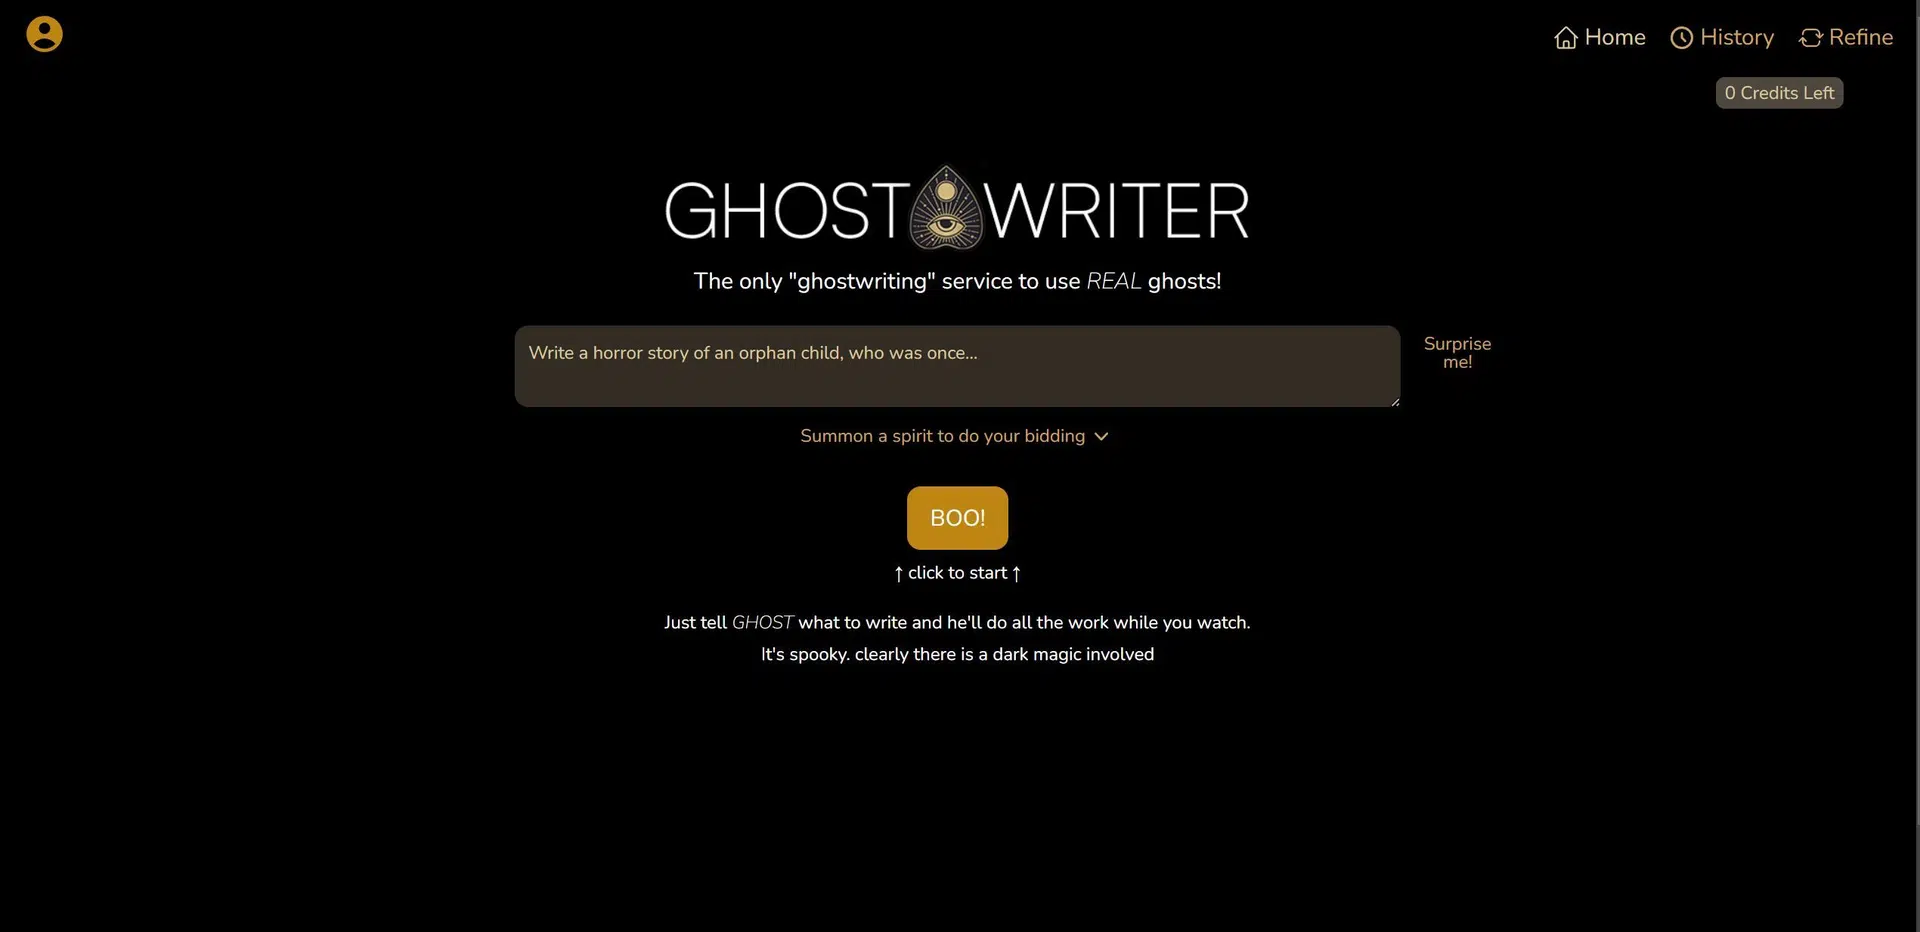 GhostWriterwebsite picture